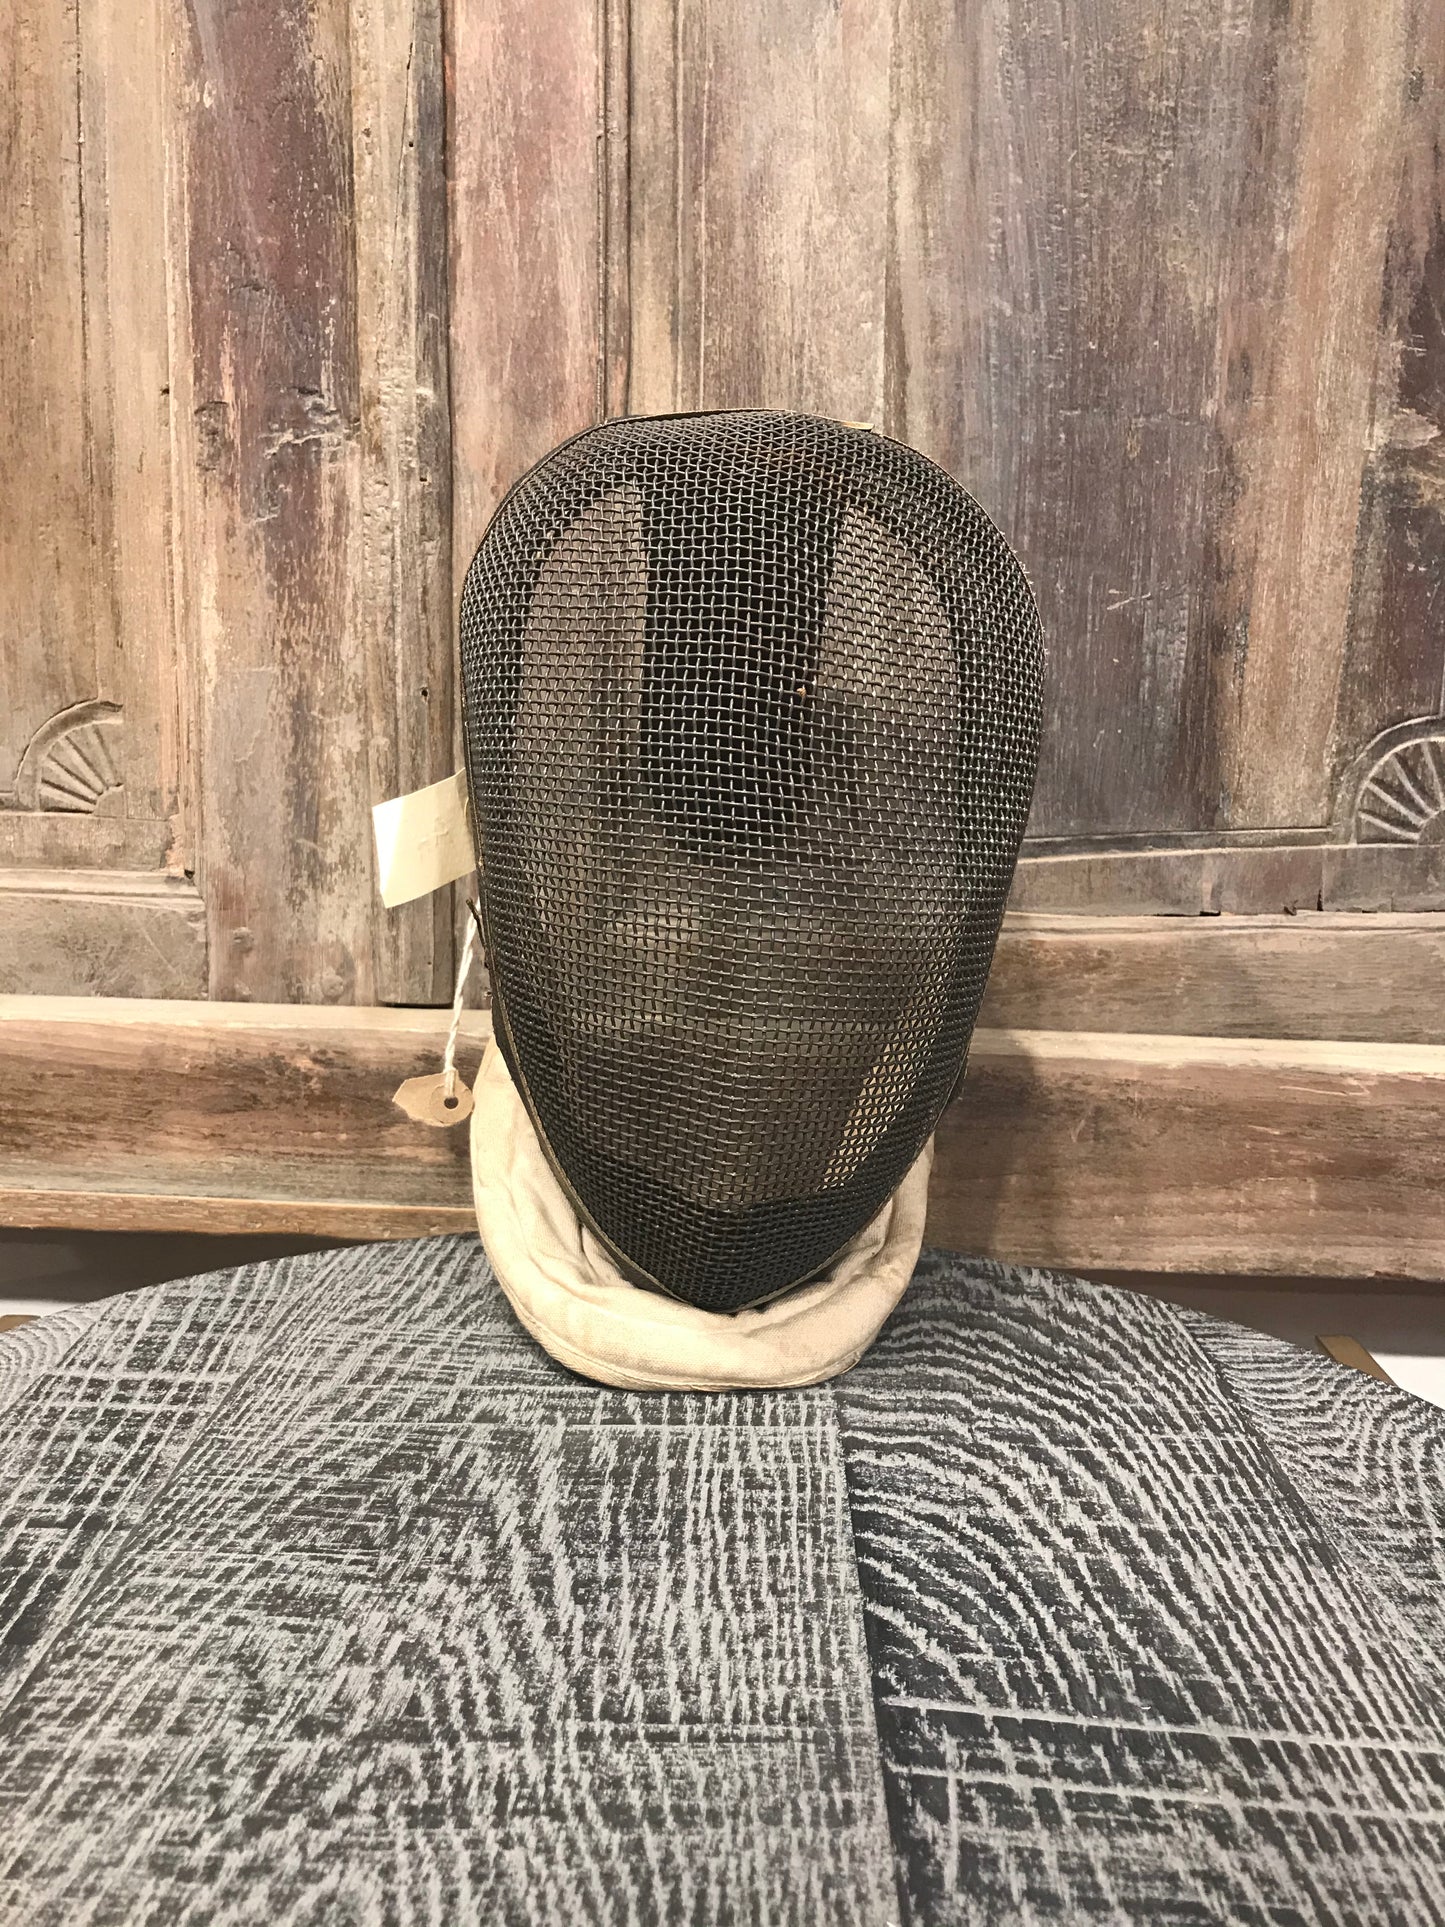 Vintage Fencing Mask